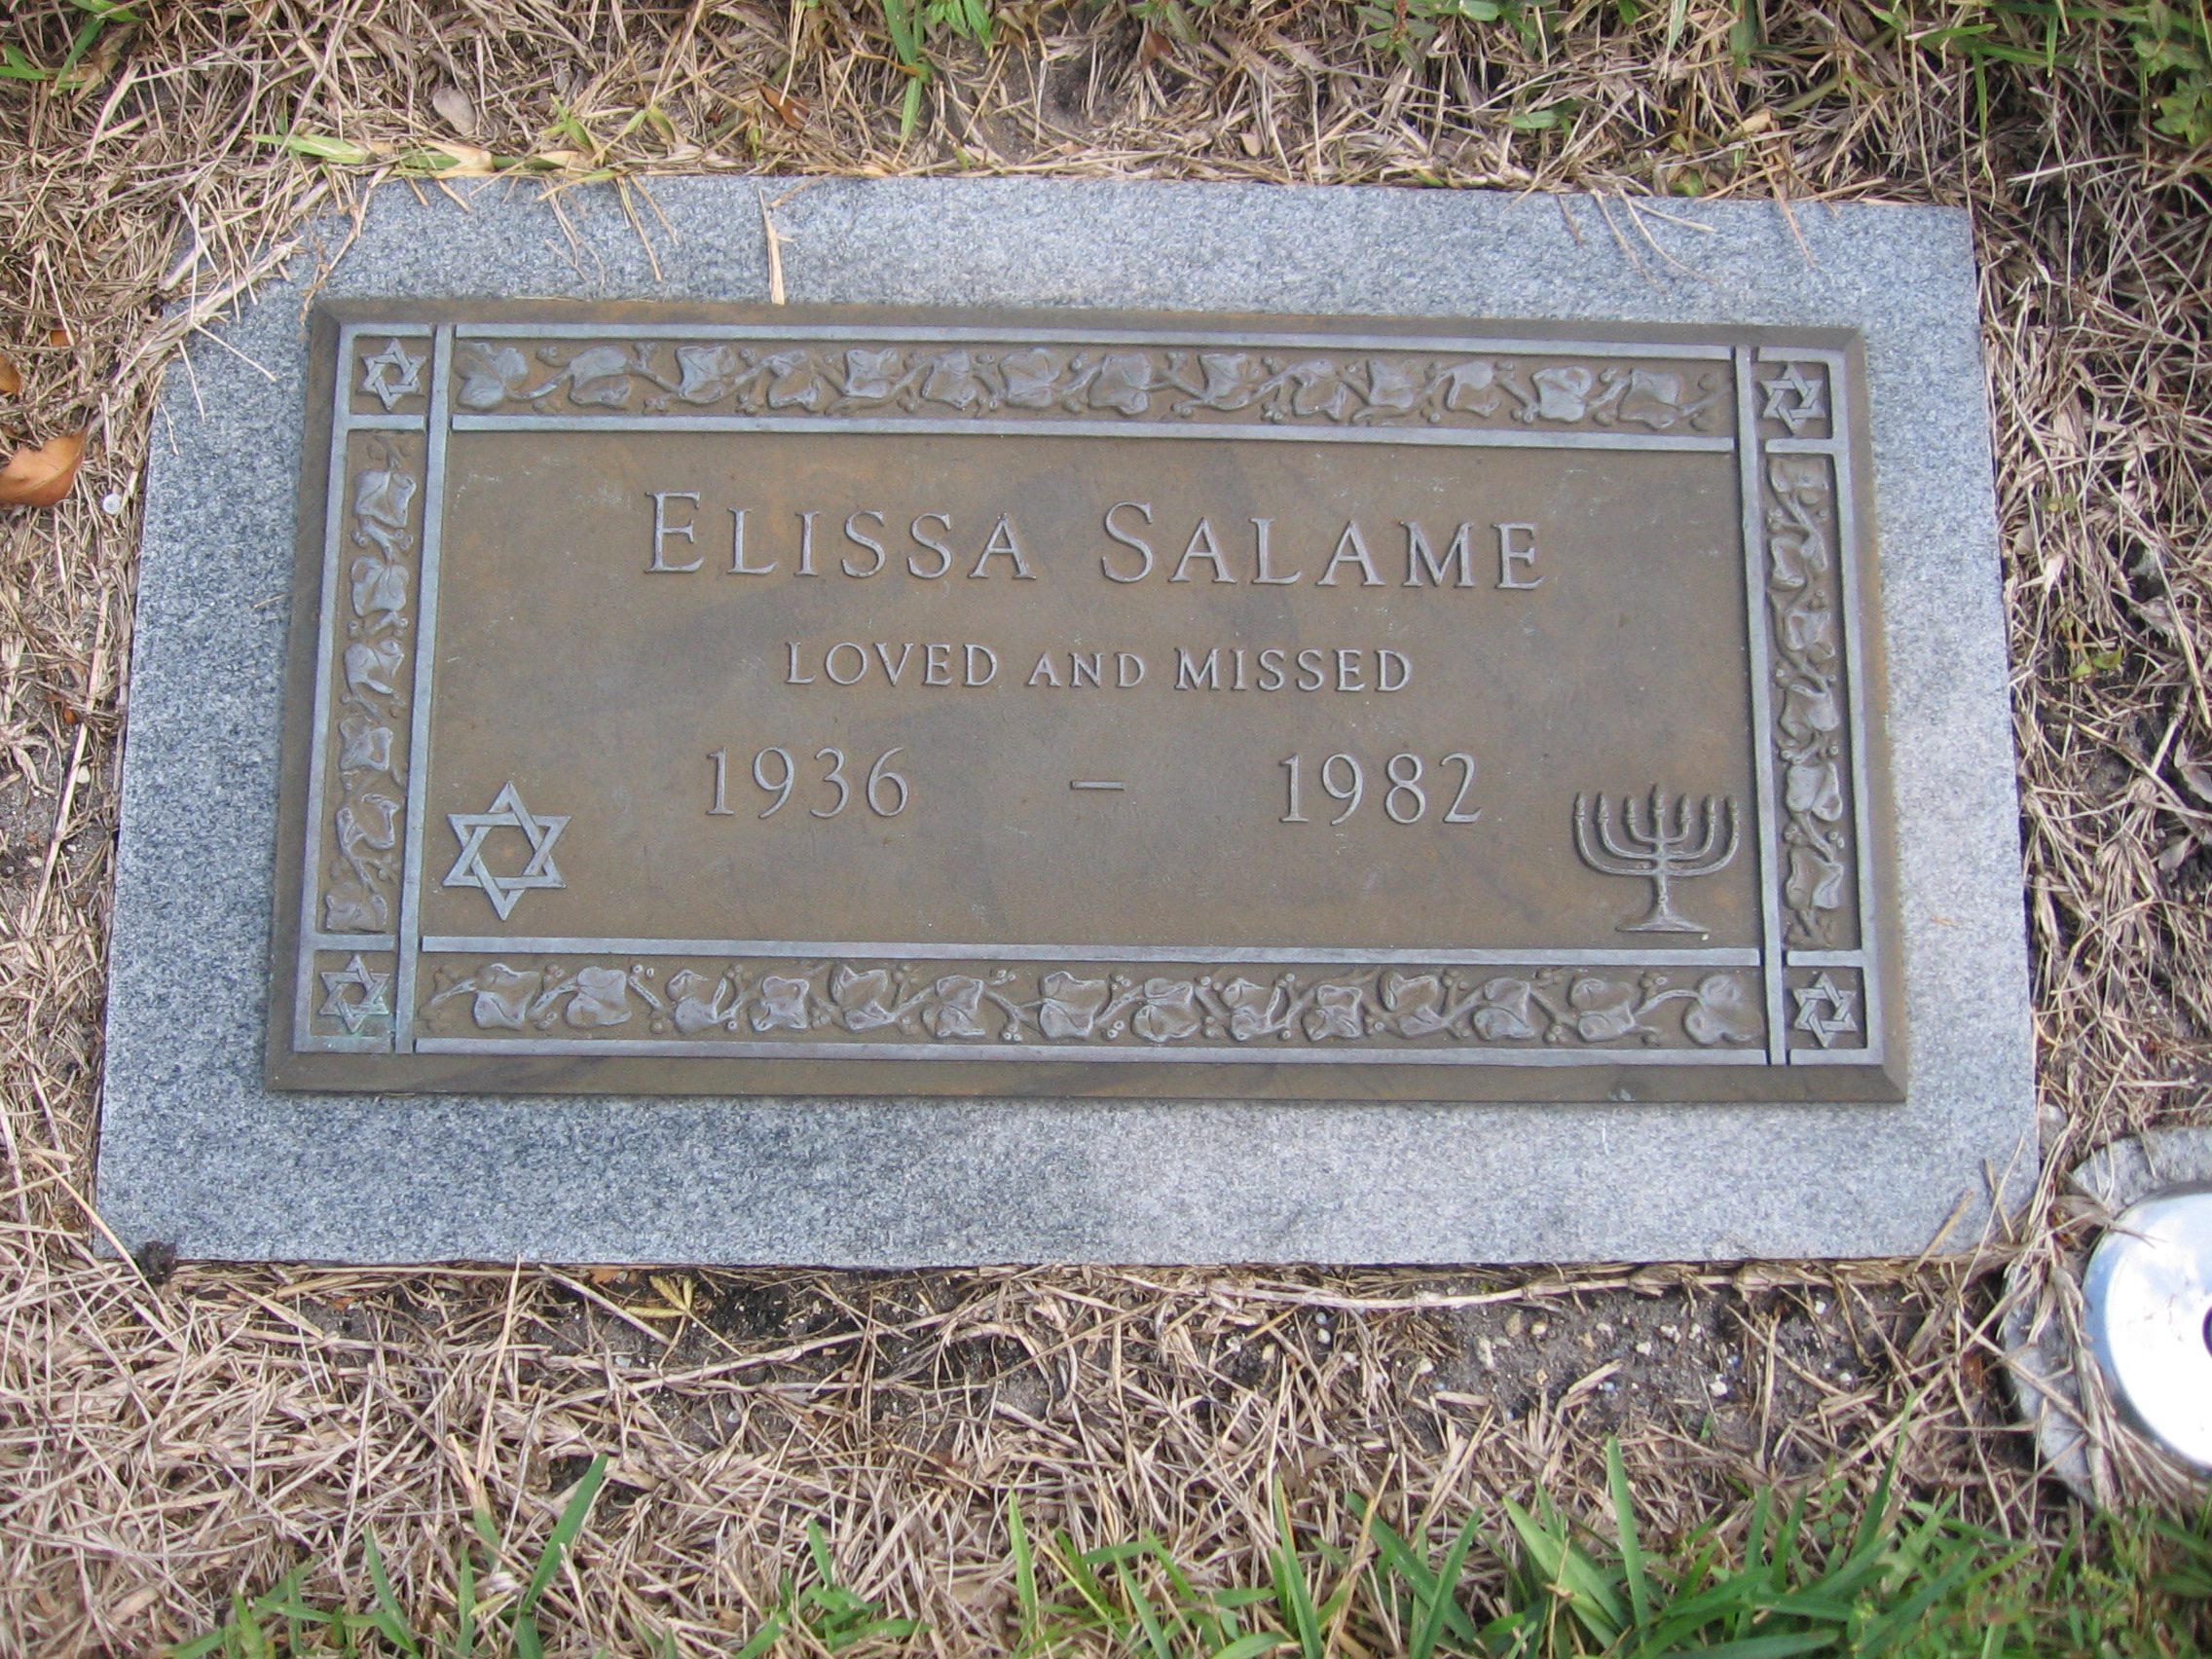 Elissa Salame